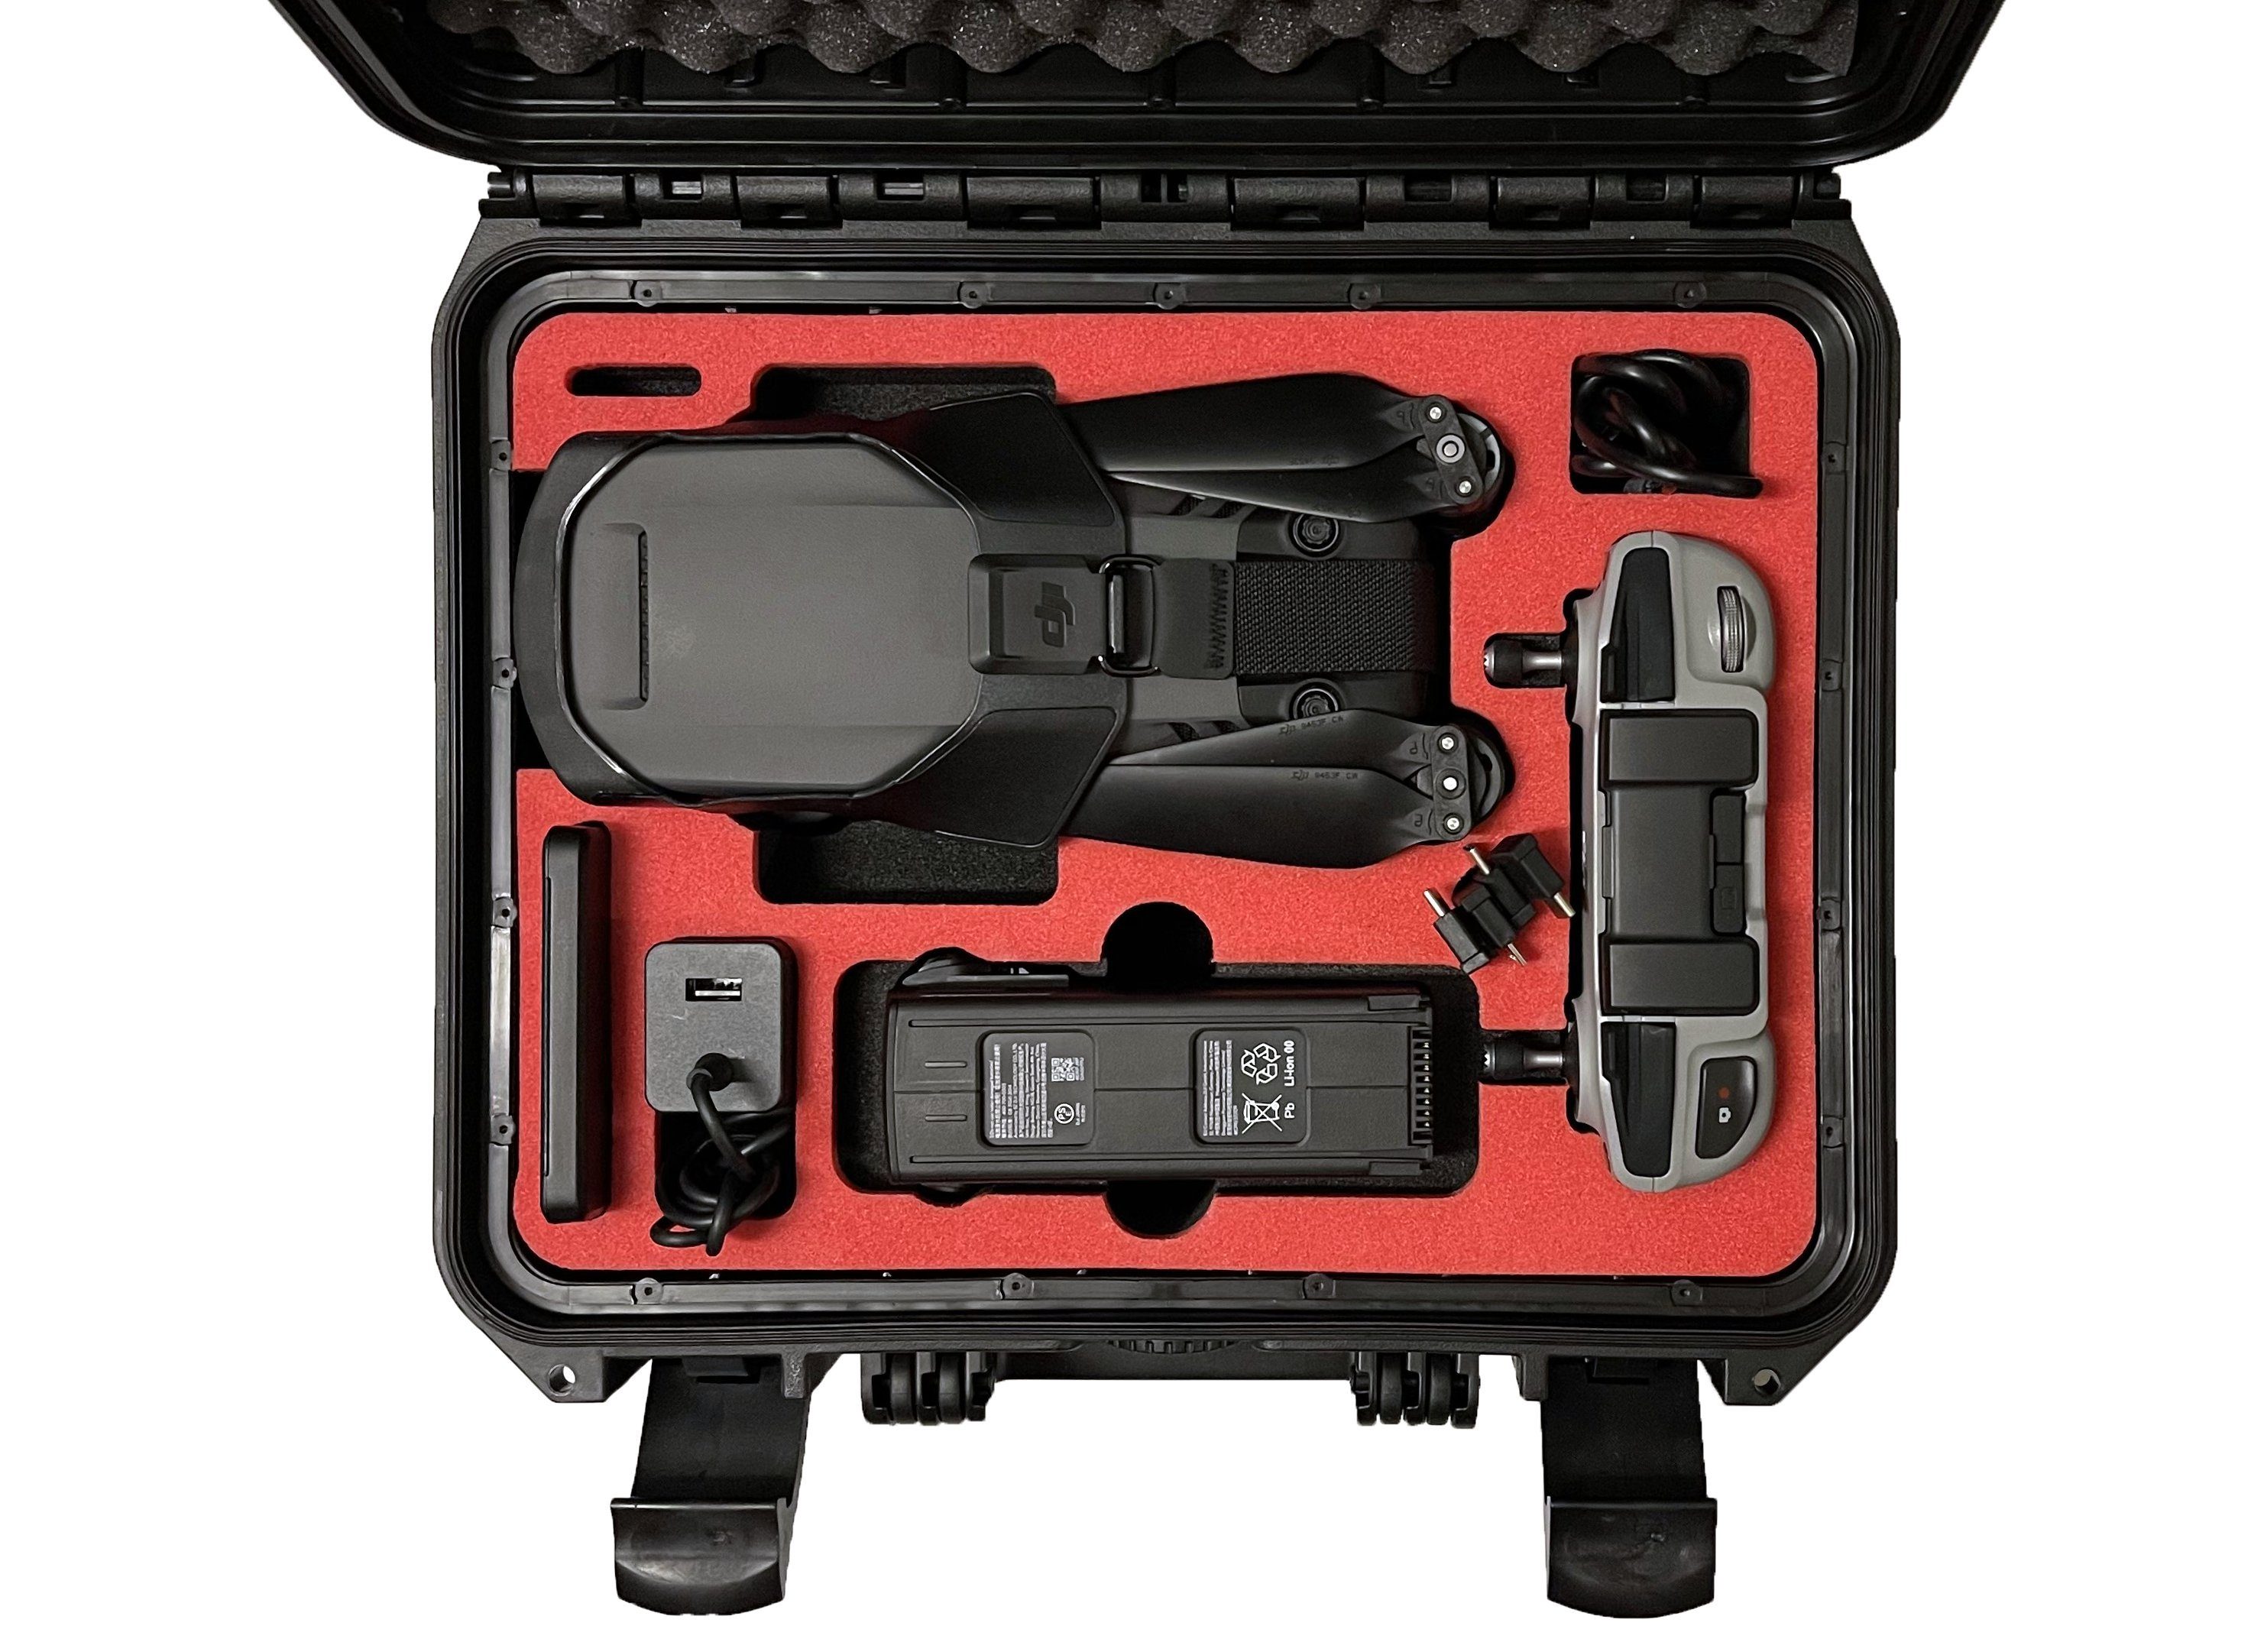 In MC-CASES Koffer DJI Drohnen-Tasche - 3 - für Vorbestellung MC-CASES Edition hergestellt Mavic - Deutschland Kompakt